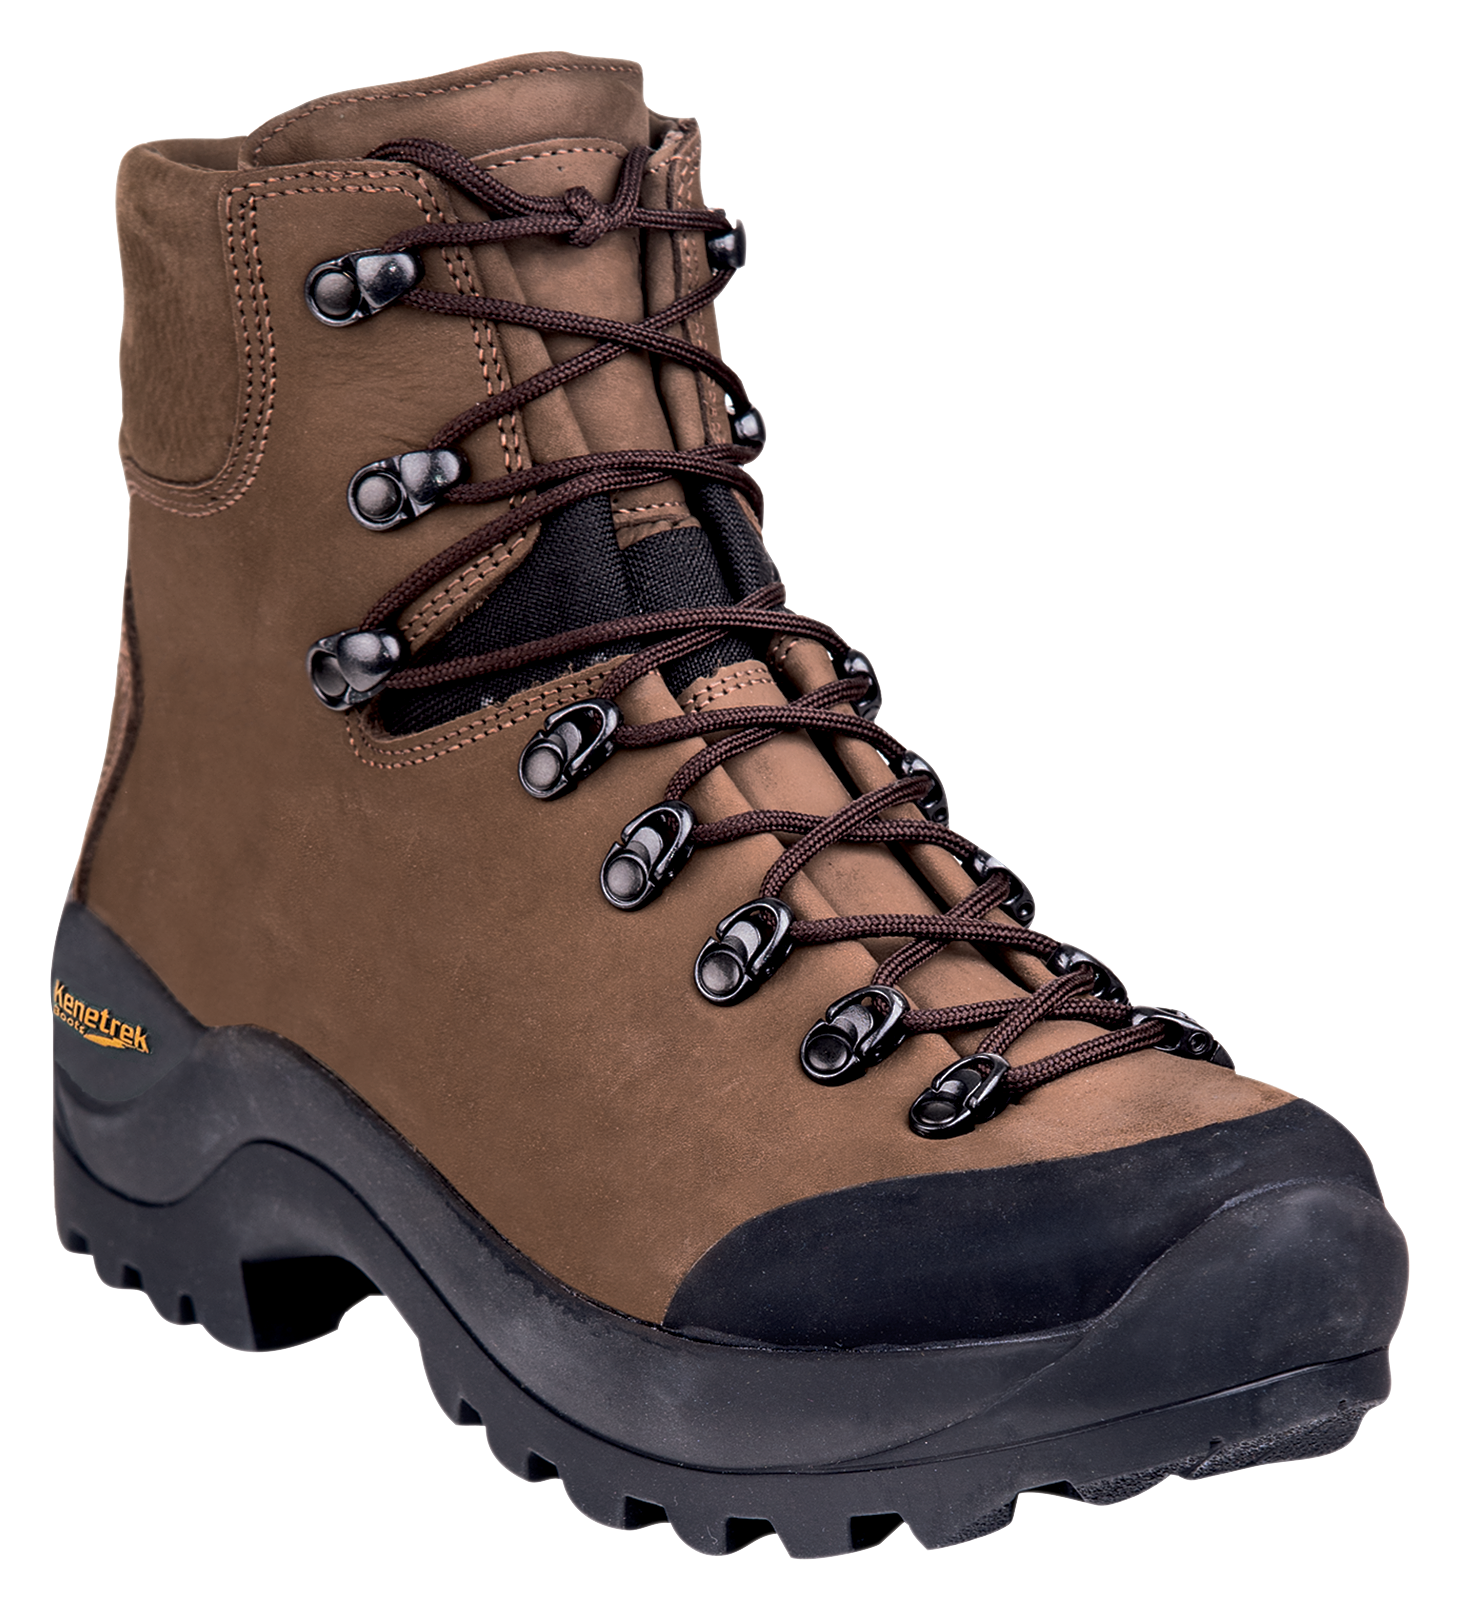 Kenetrek Desert Guide Hunting Boots for Men - Brown - 10M